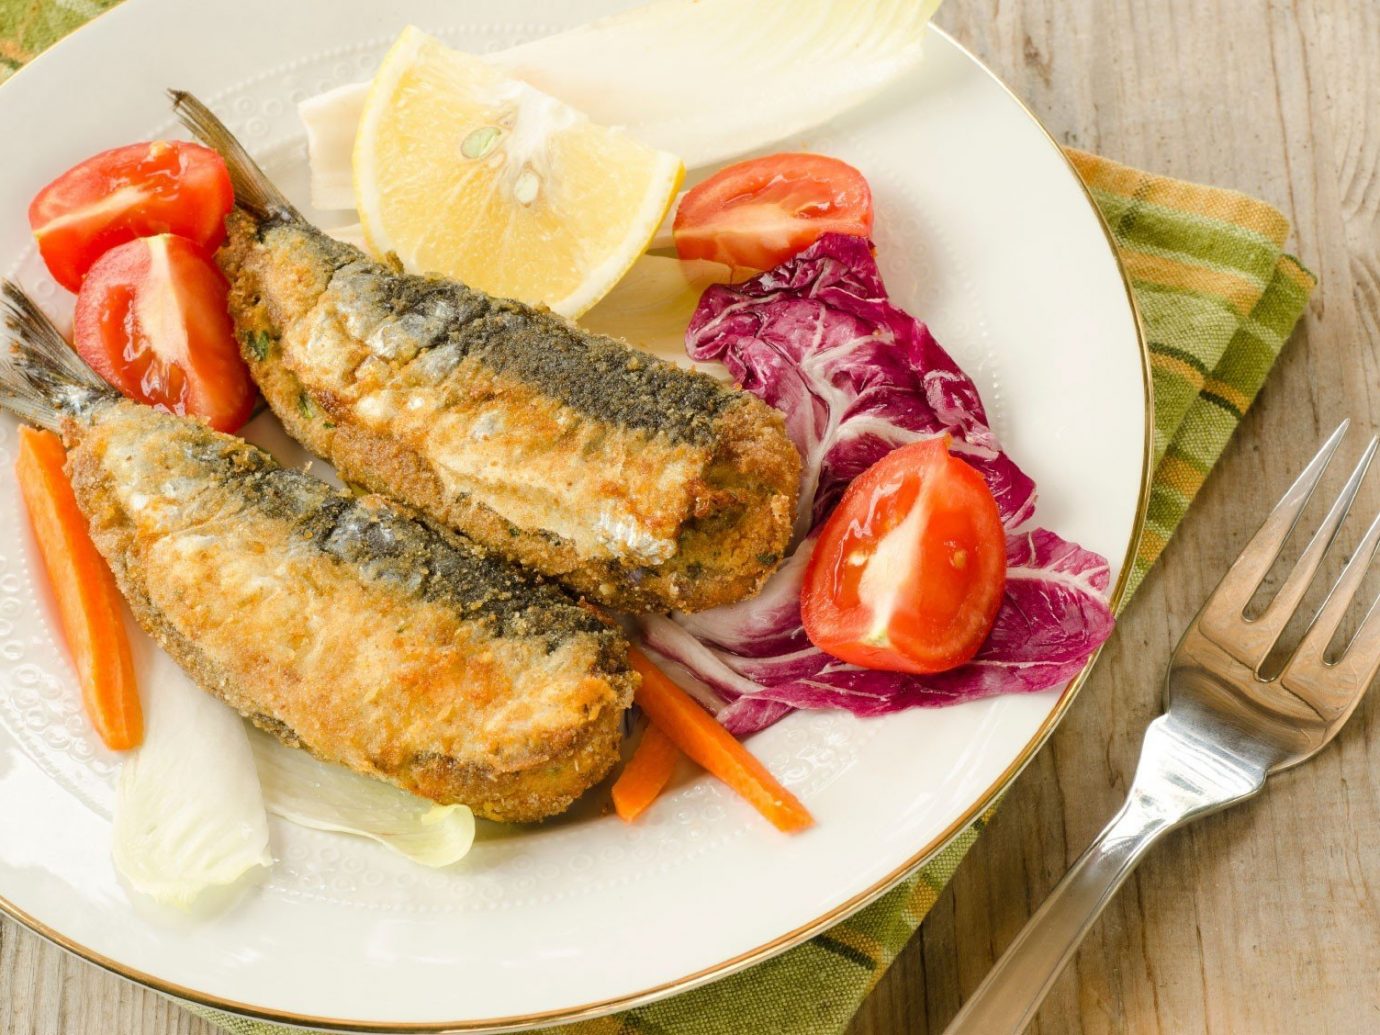 Food + Drink plate food table dish produce cuisine meat vegetable sardine meal fish sliced